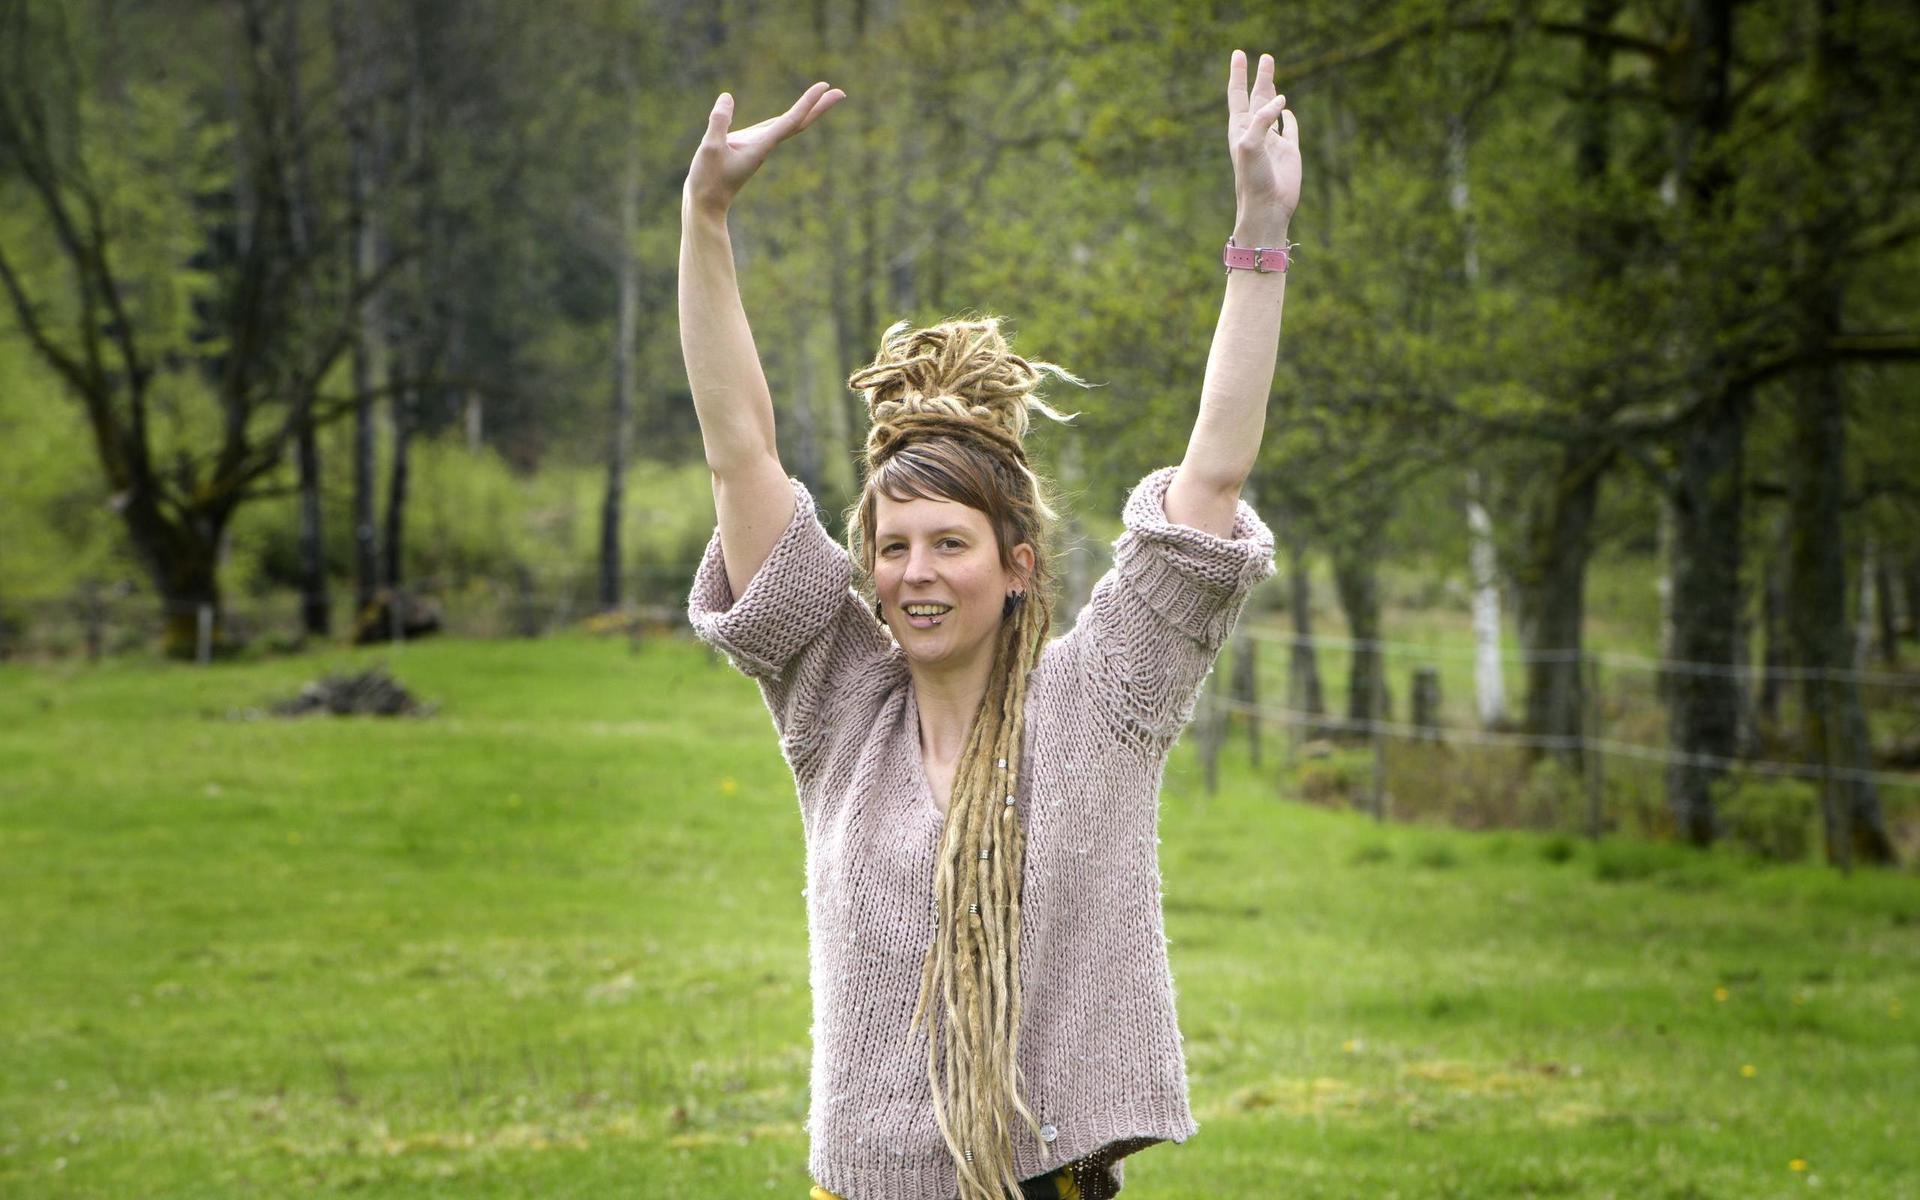 Yogainstruktör Lina Bäcklin har hållit i ett par yogapass utomhus tidigare, men aldrig i en alpackahage: ”Det är härligt att få kontakt med gräset istället för ett golv, och att få kolla upp i himlen istället för en takfläkt”.